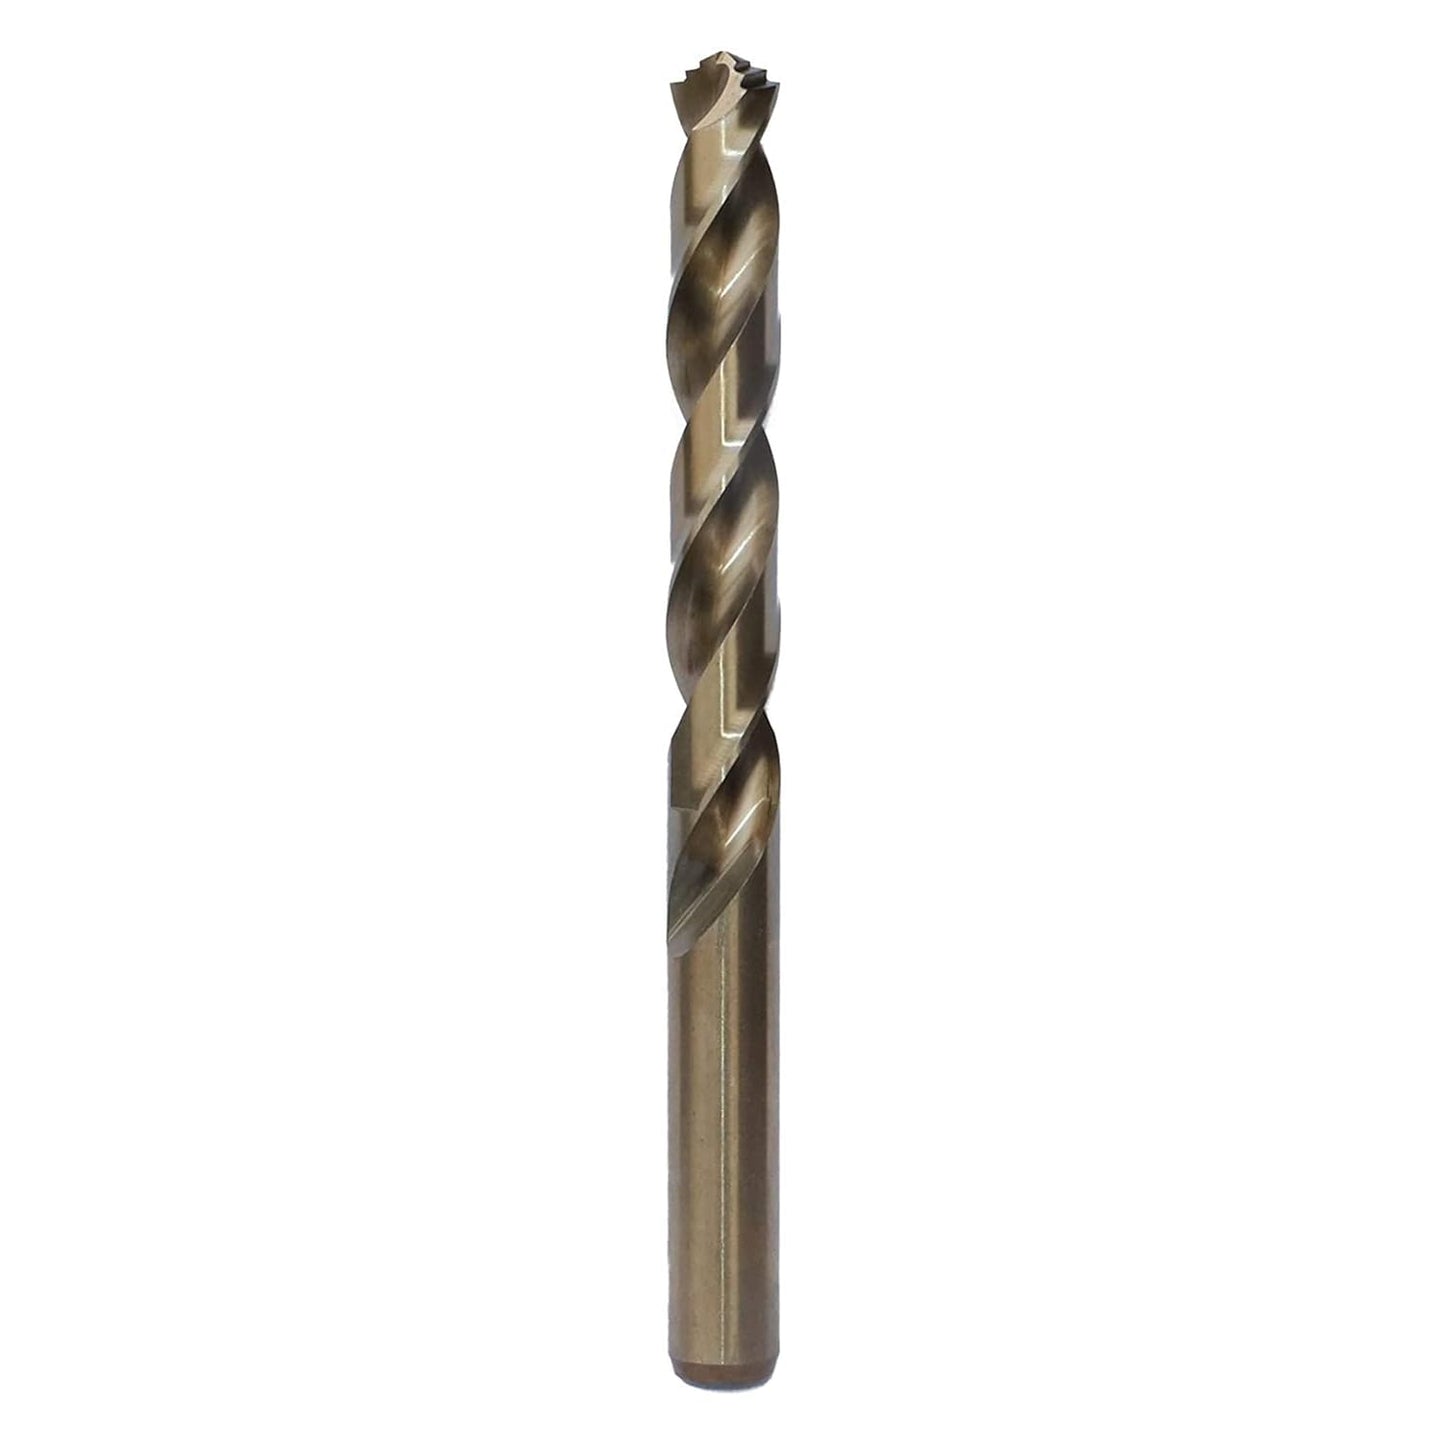 MAF PRO 13Pcs HSS Drill Bit Set/High Speed Steel Twist Drill Bit Tool Set for Drilling Wood, Aluminium, Plastic, Wall (1.5-6.5mm)